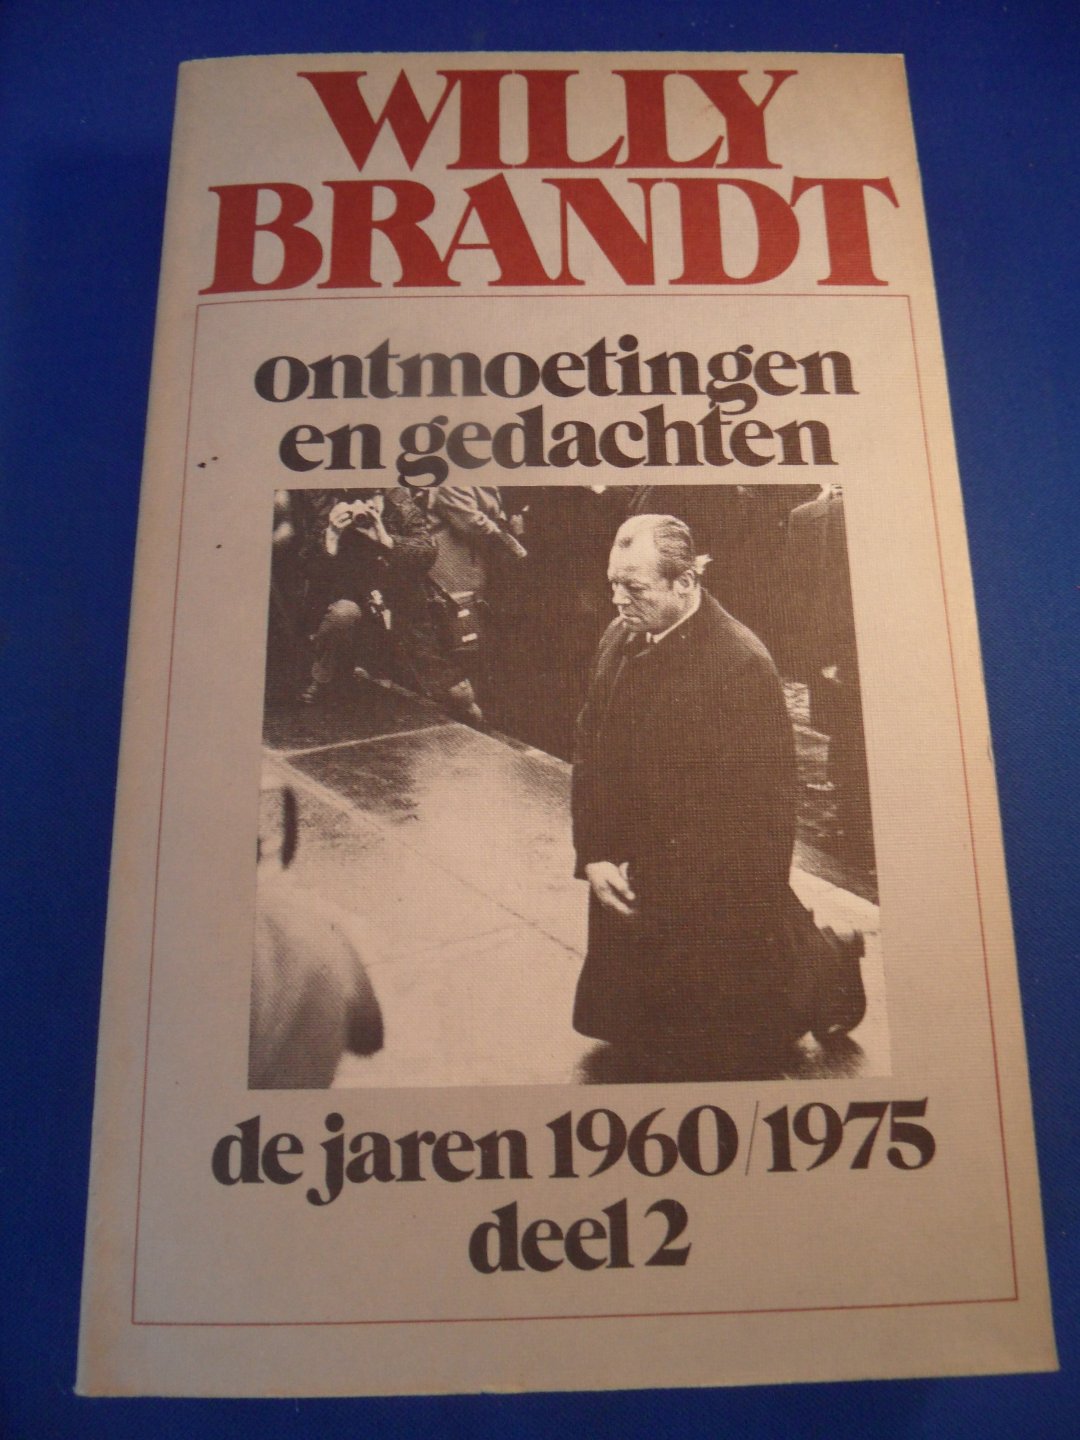 Brandt, Willy - Ontmoetingen en gedachten. De jaren 1960/1975. Deel 2.